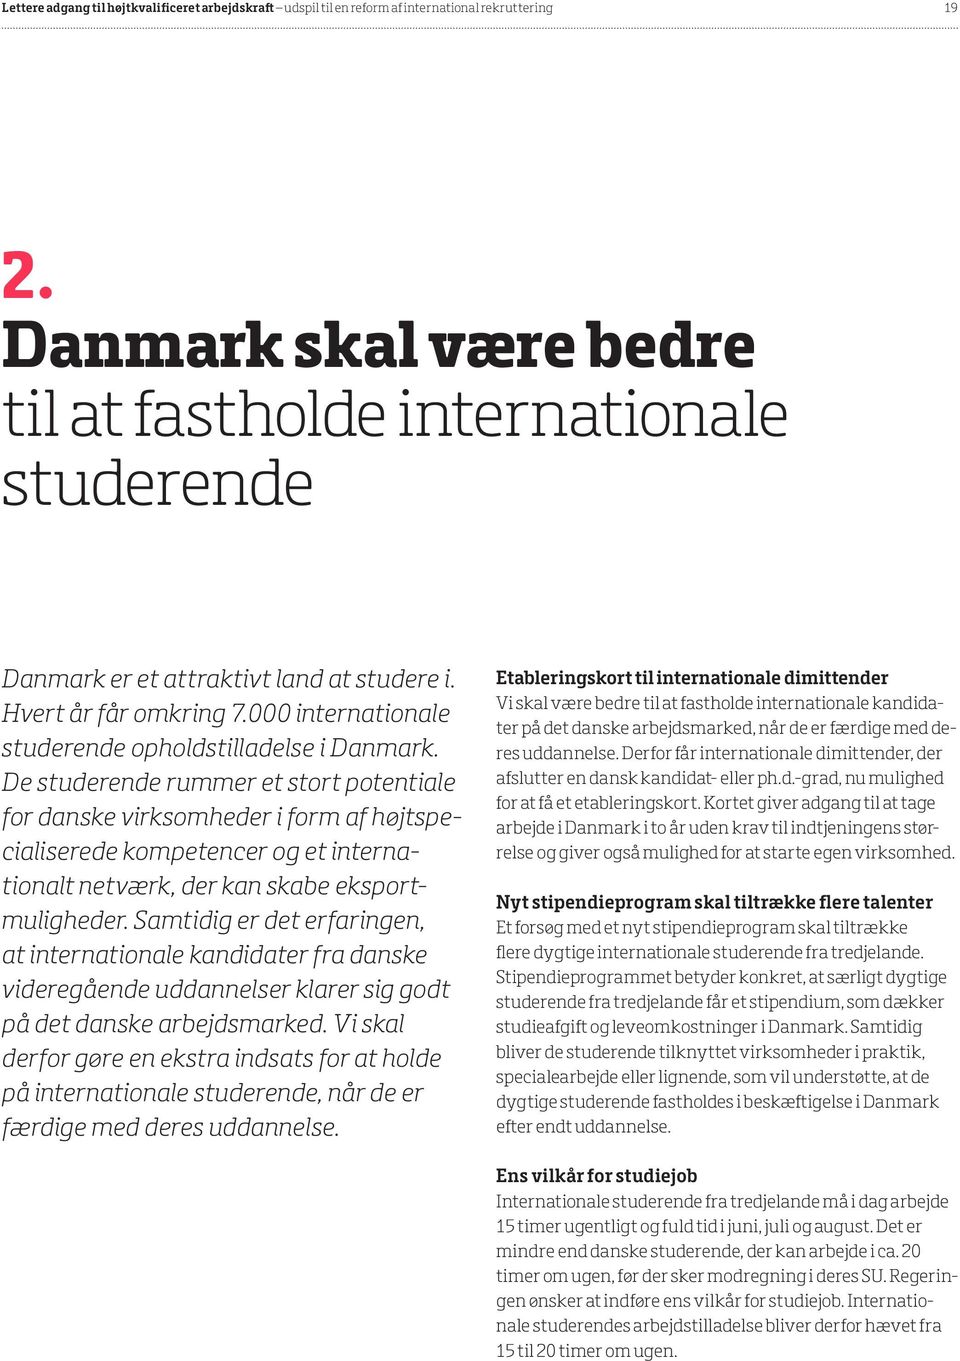 De studerende rummer et stort potentiale for danske virksomheder i form af højtspecialiserede kompetencer og et internationalt netværk, der kan skabe eksportmuligheder.